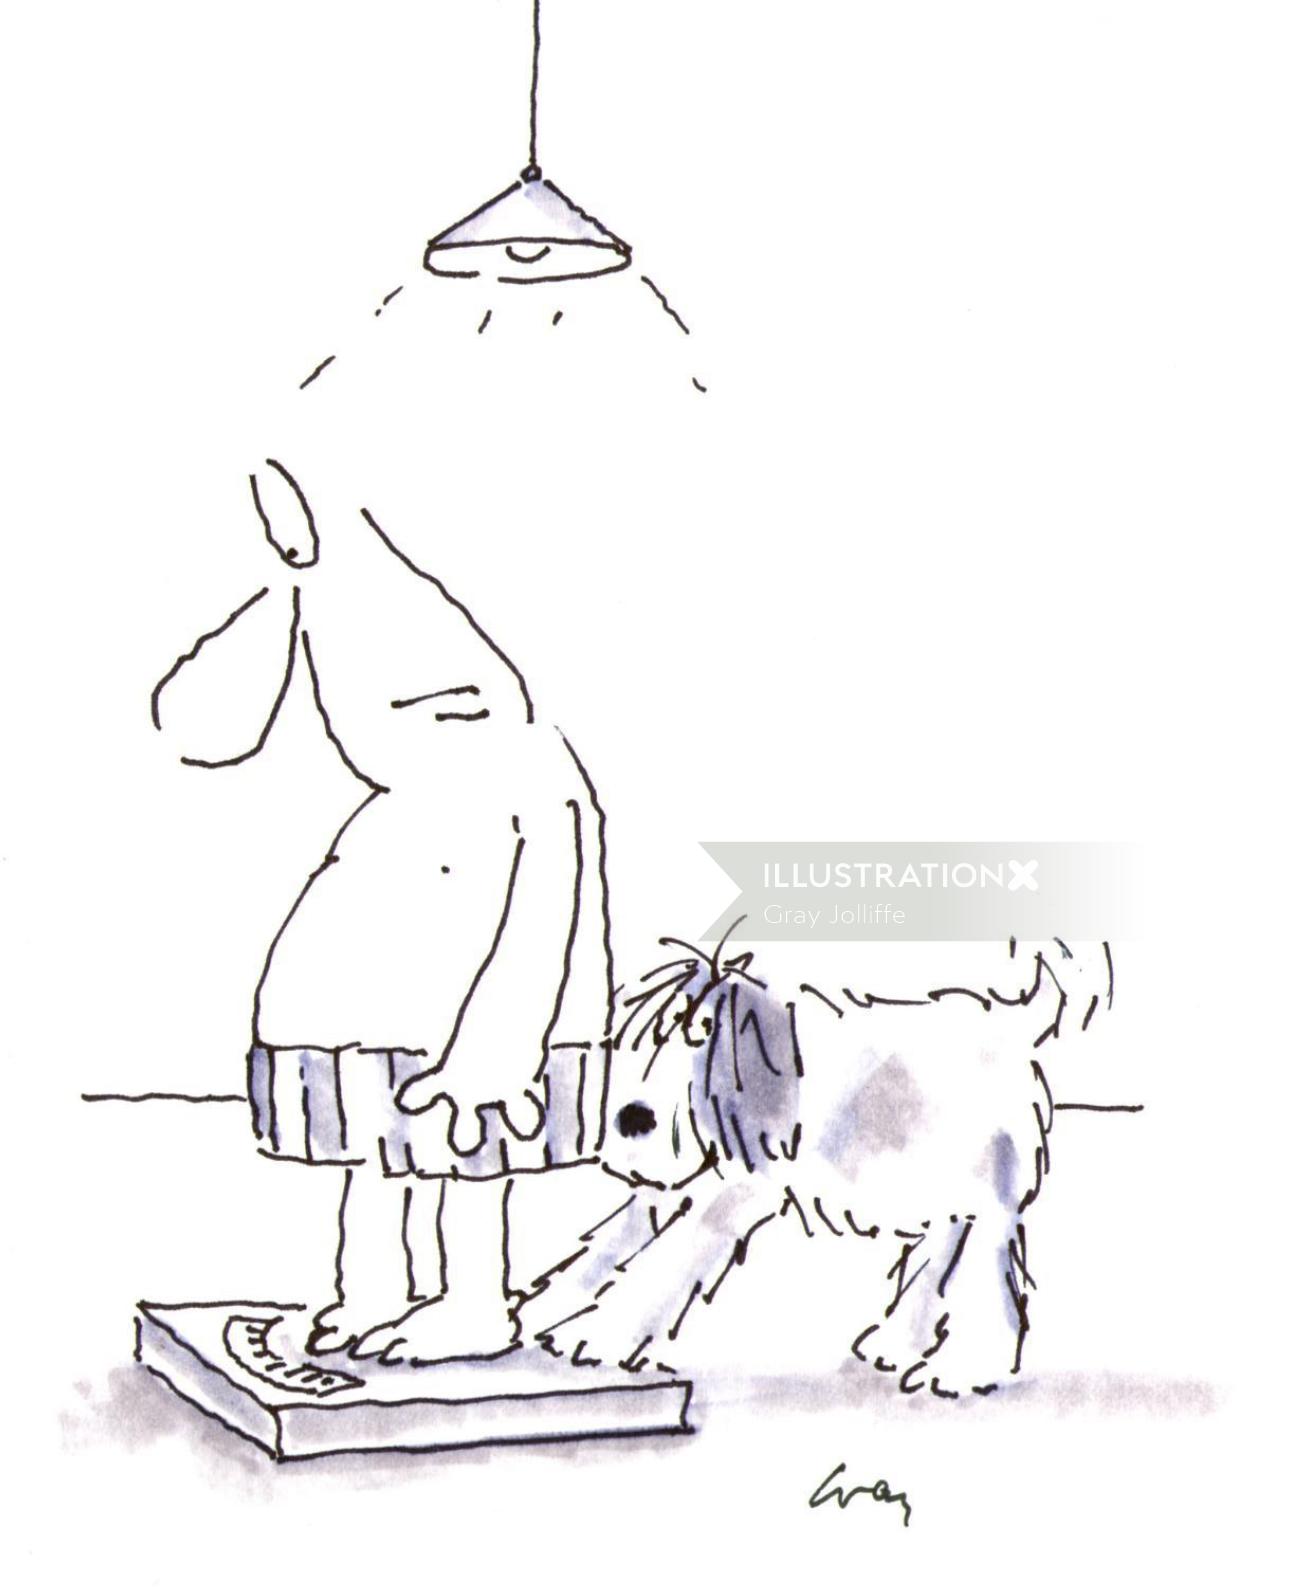 Homem e cachorro na balança pessoal - ilustração dos desenhos animados por Gray Jolliffe